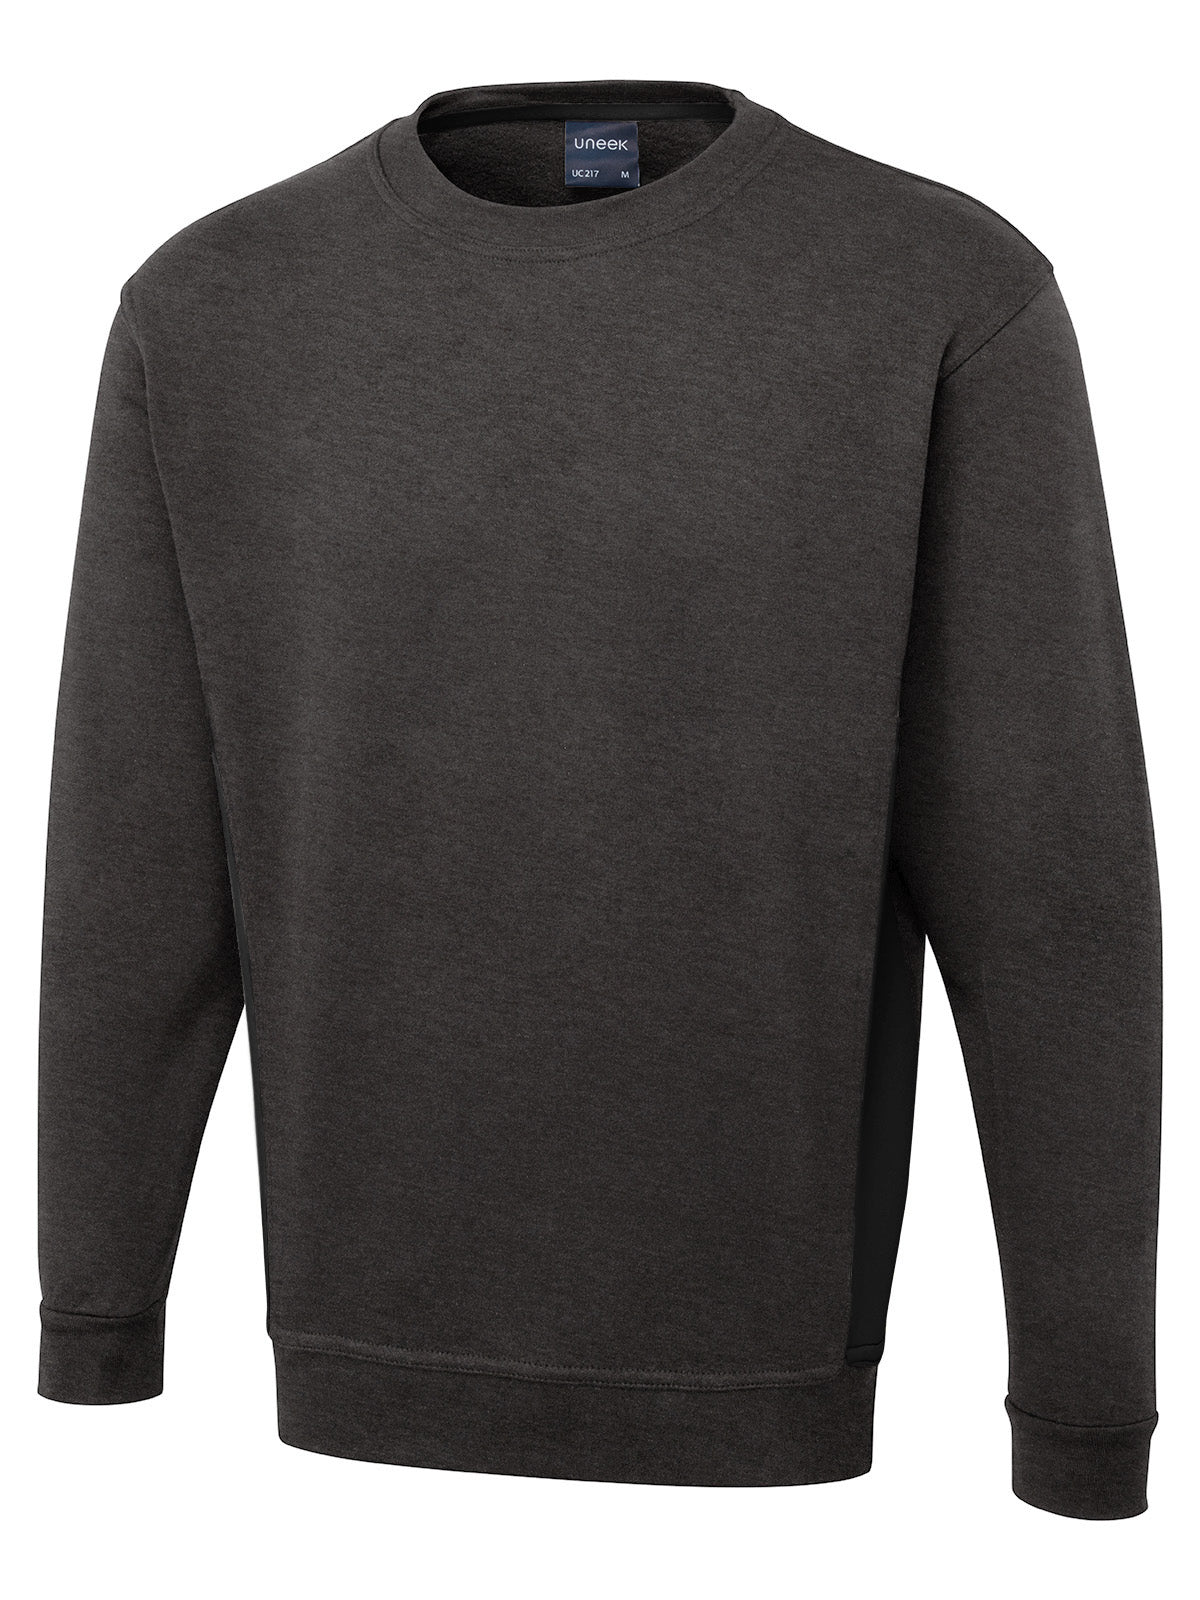 Uneek Two Tone Crew New Sweatshirt UC217 - Charcoal/Black